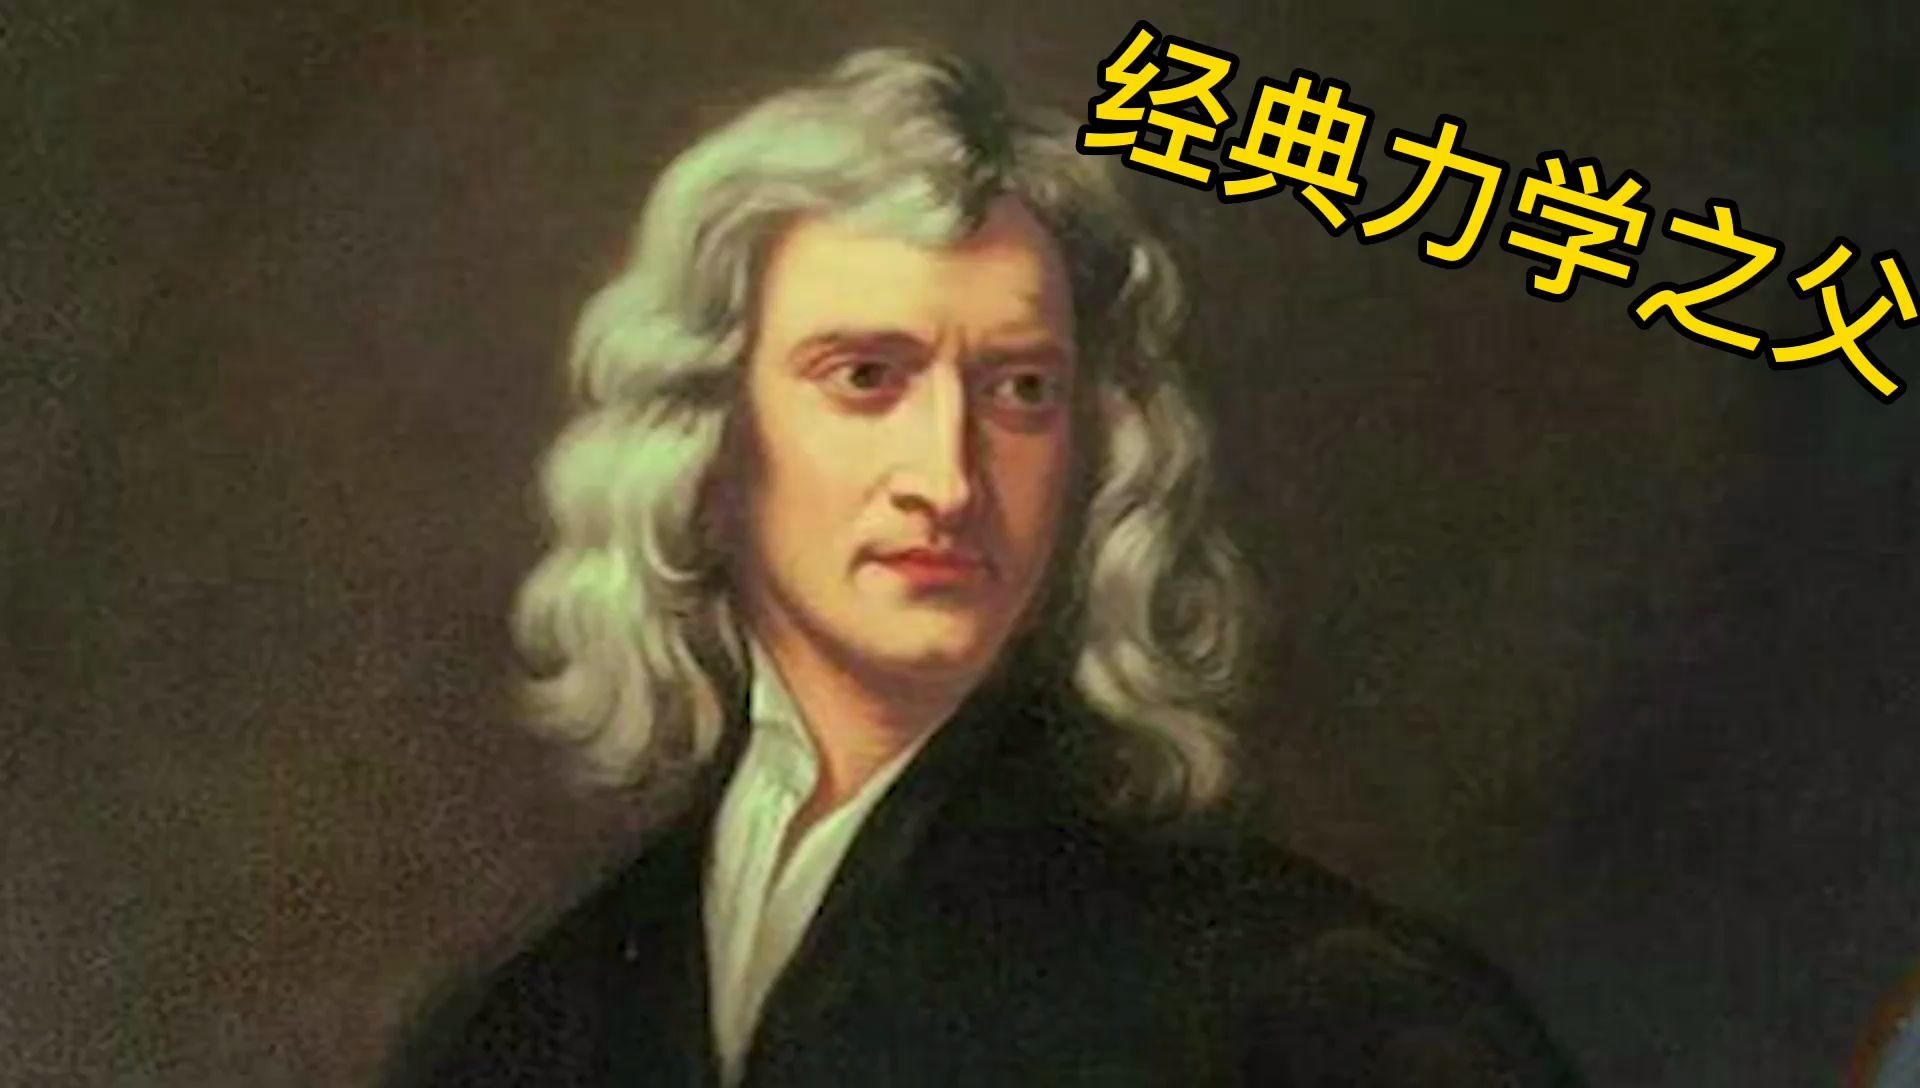 第五期经典力学之父牛顿一物理学界最接近神的人